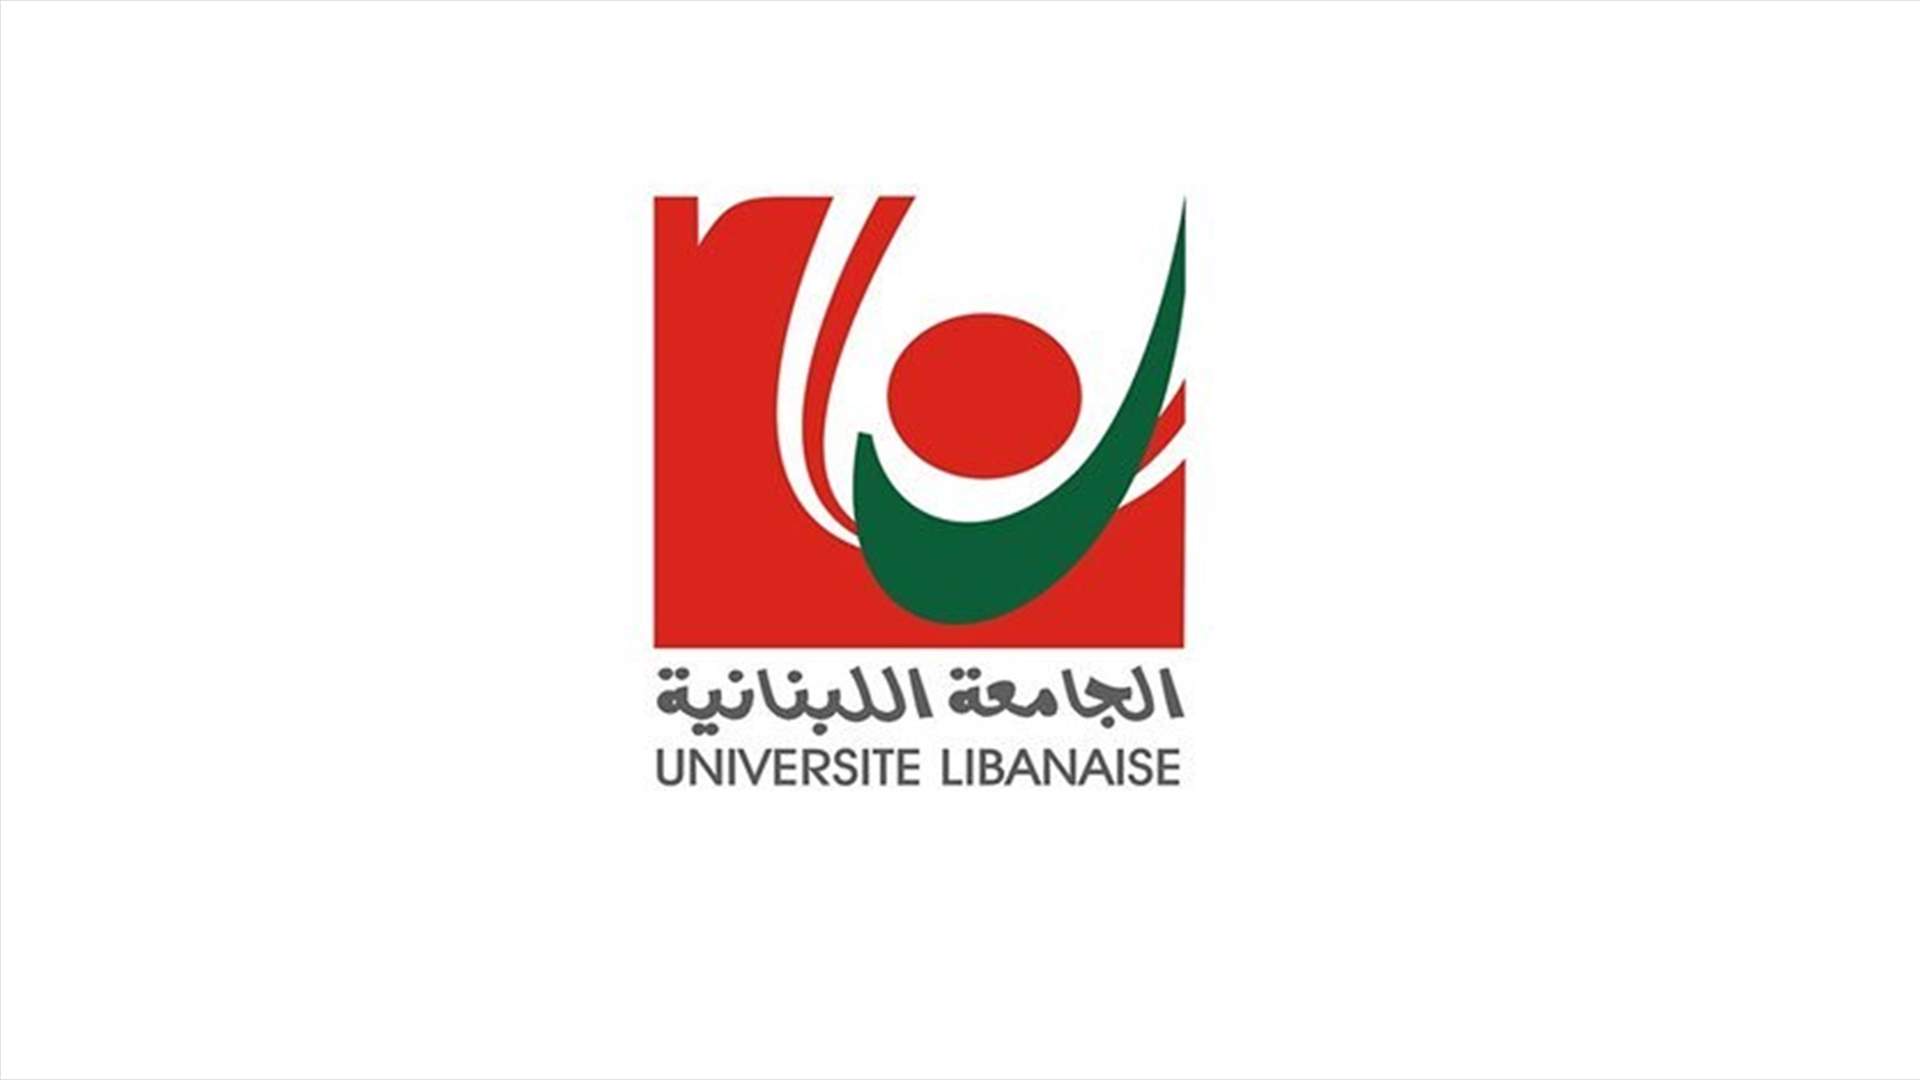 الجمعية العمومية لأساتذة الجامعة اللبنانية اوصت الإستمرار بالإضراب الى حين صدور الموازنة